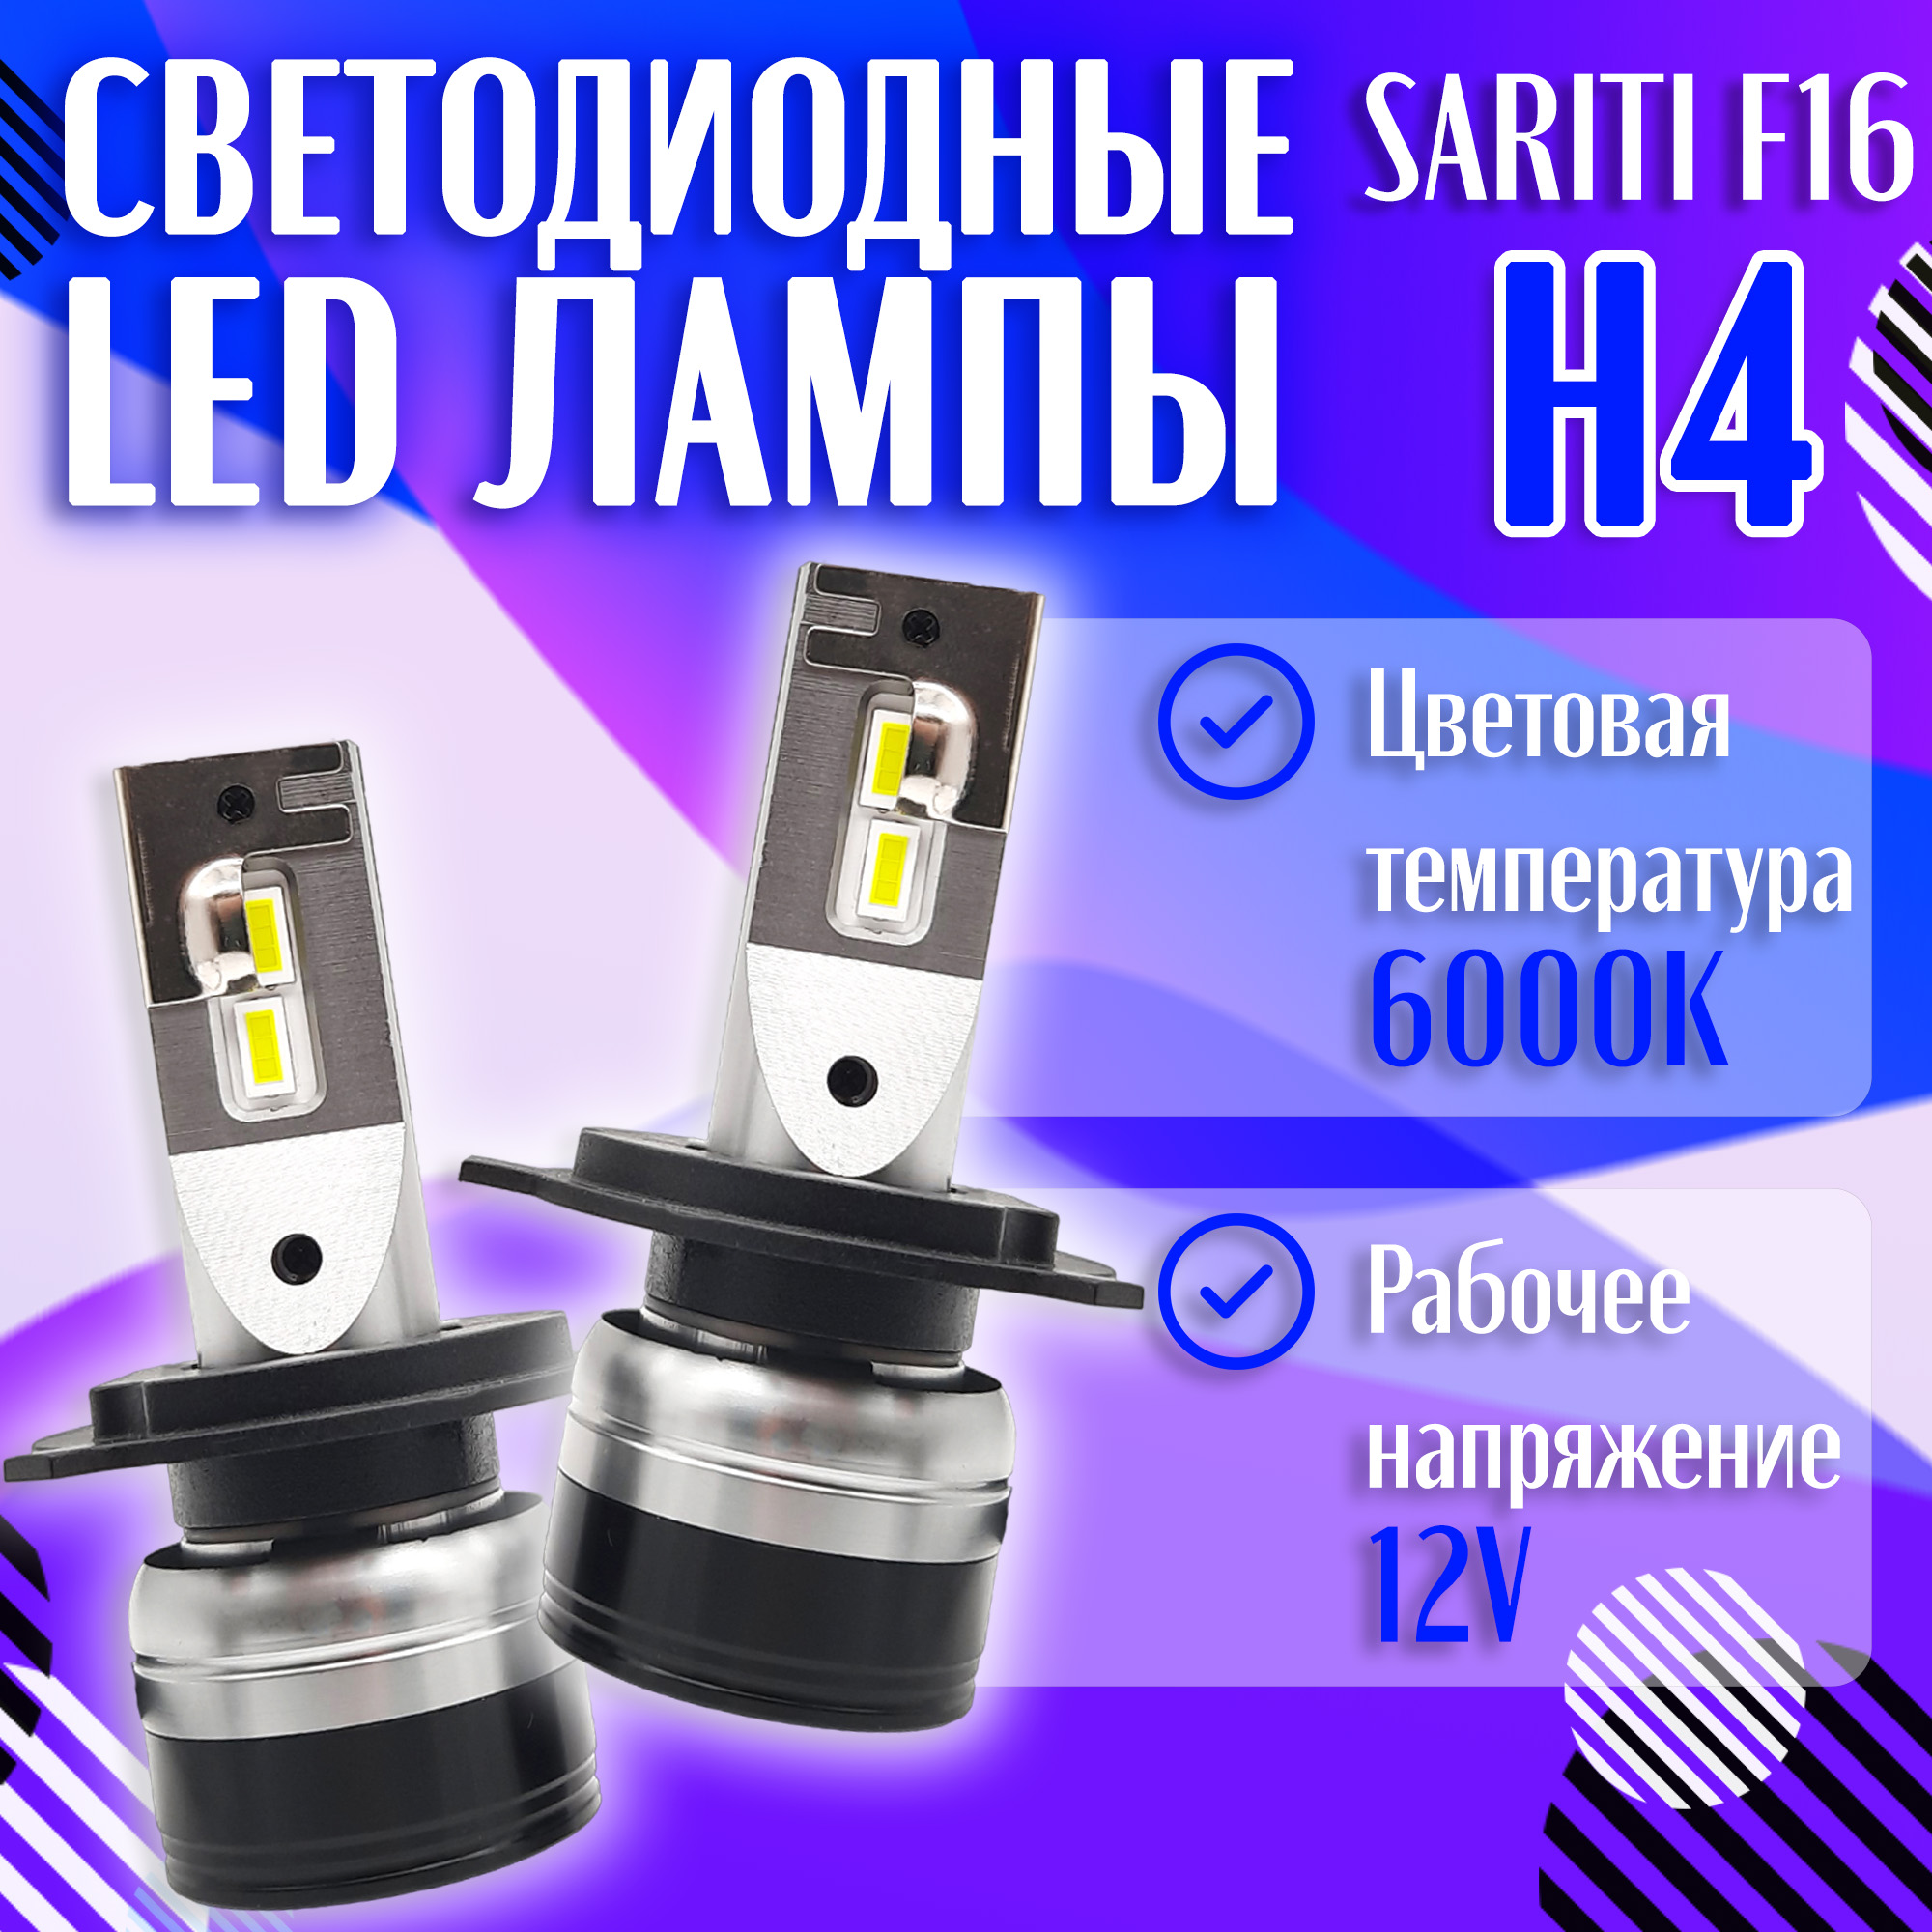 Светодиодные LED лампы SARITI F16 H7 6000K 12V